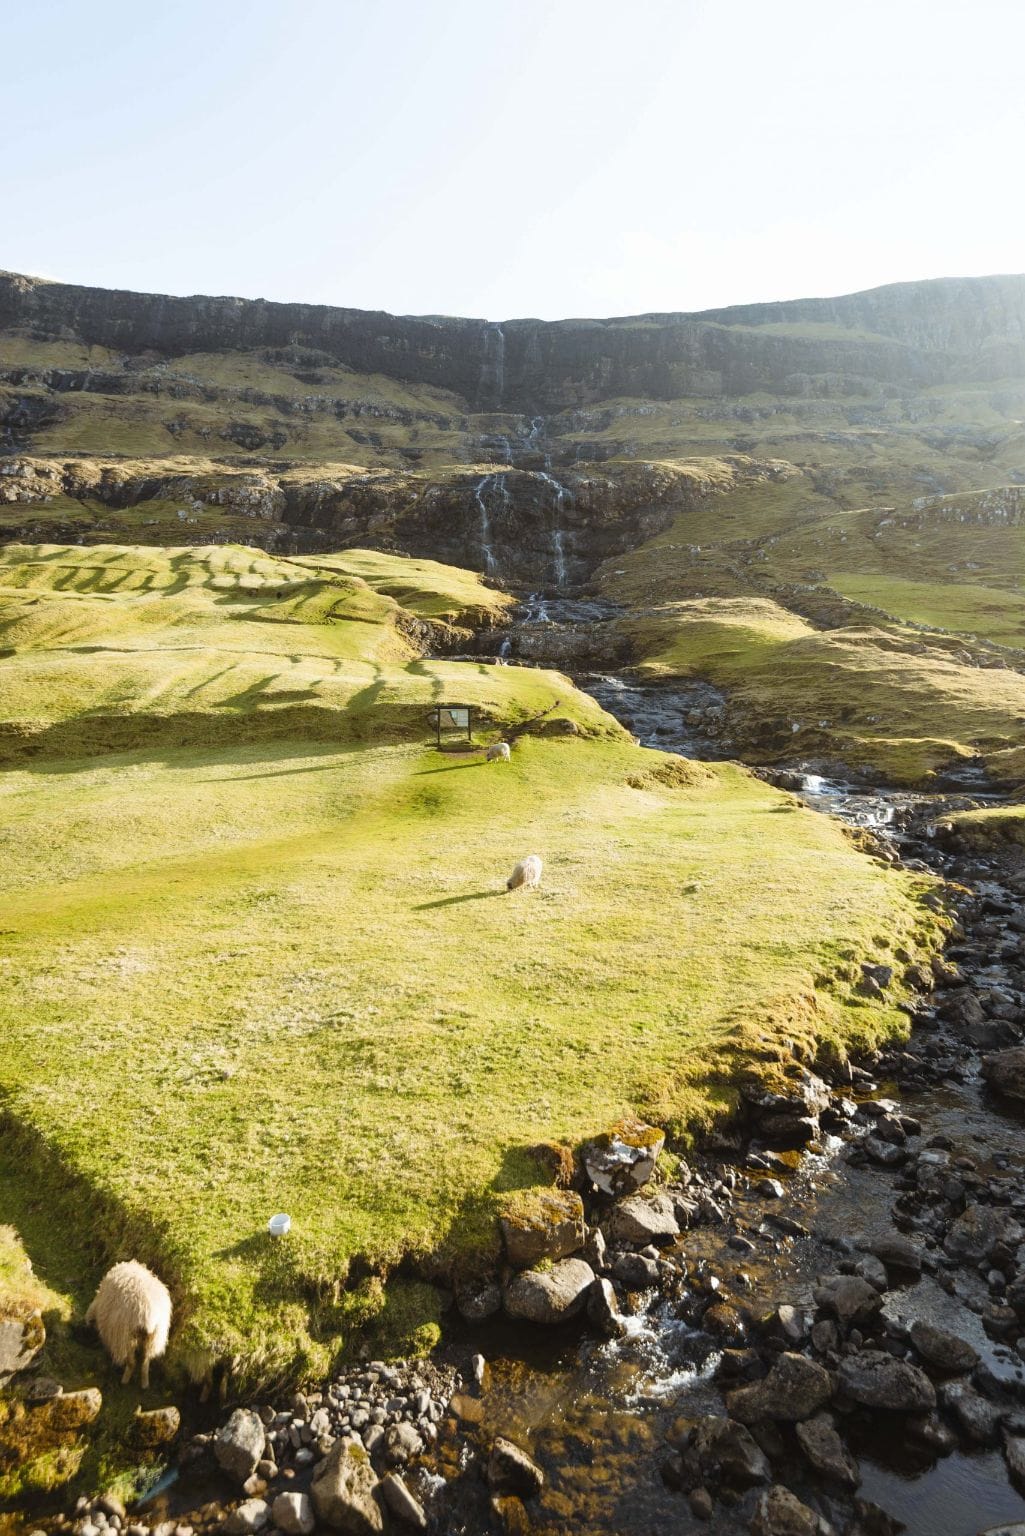 Stephen Norman Faroe Islands image 28